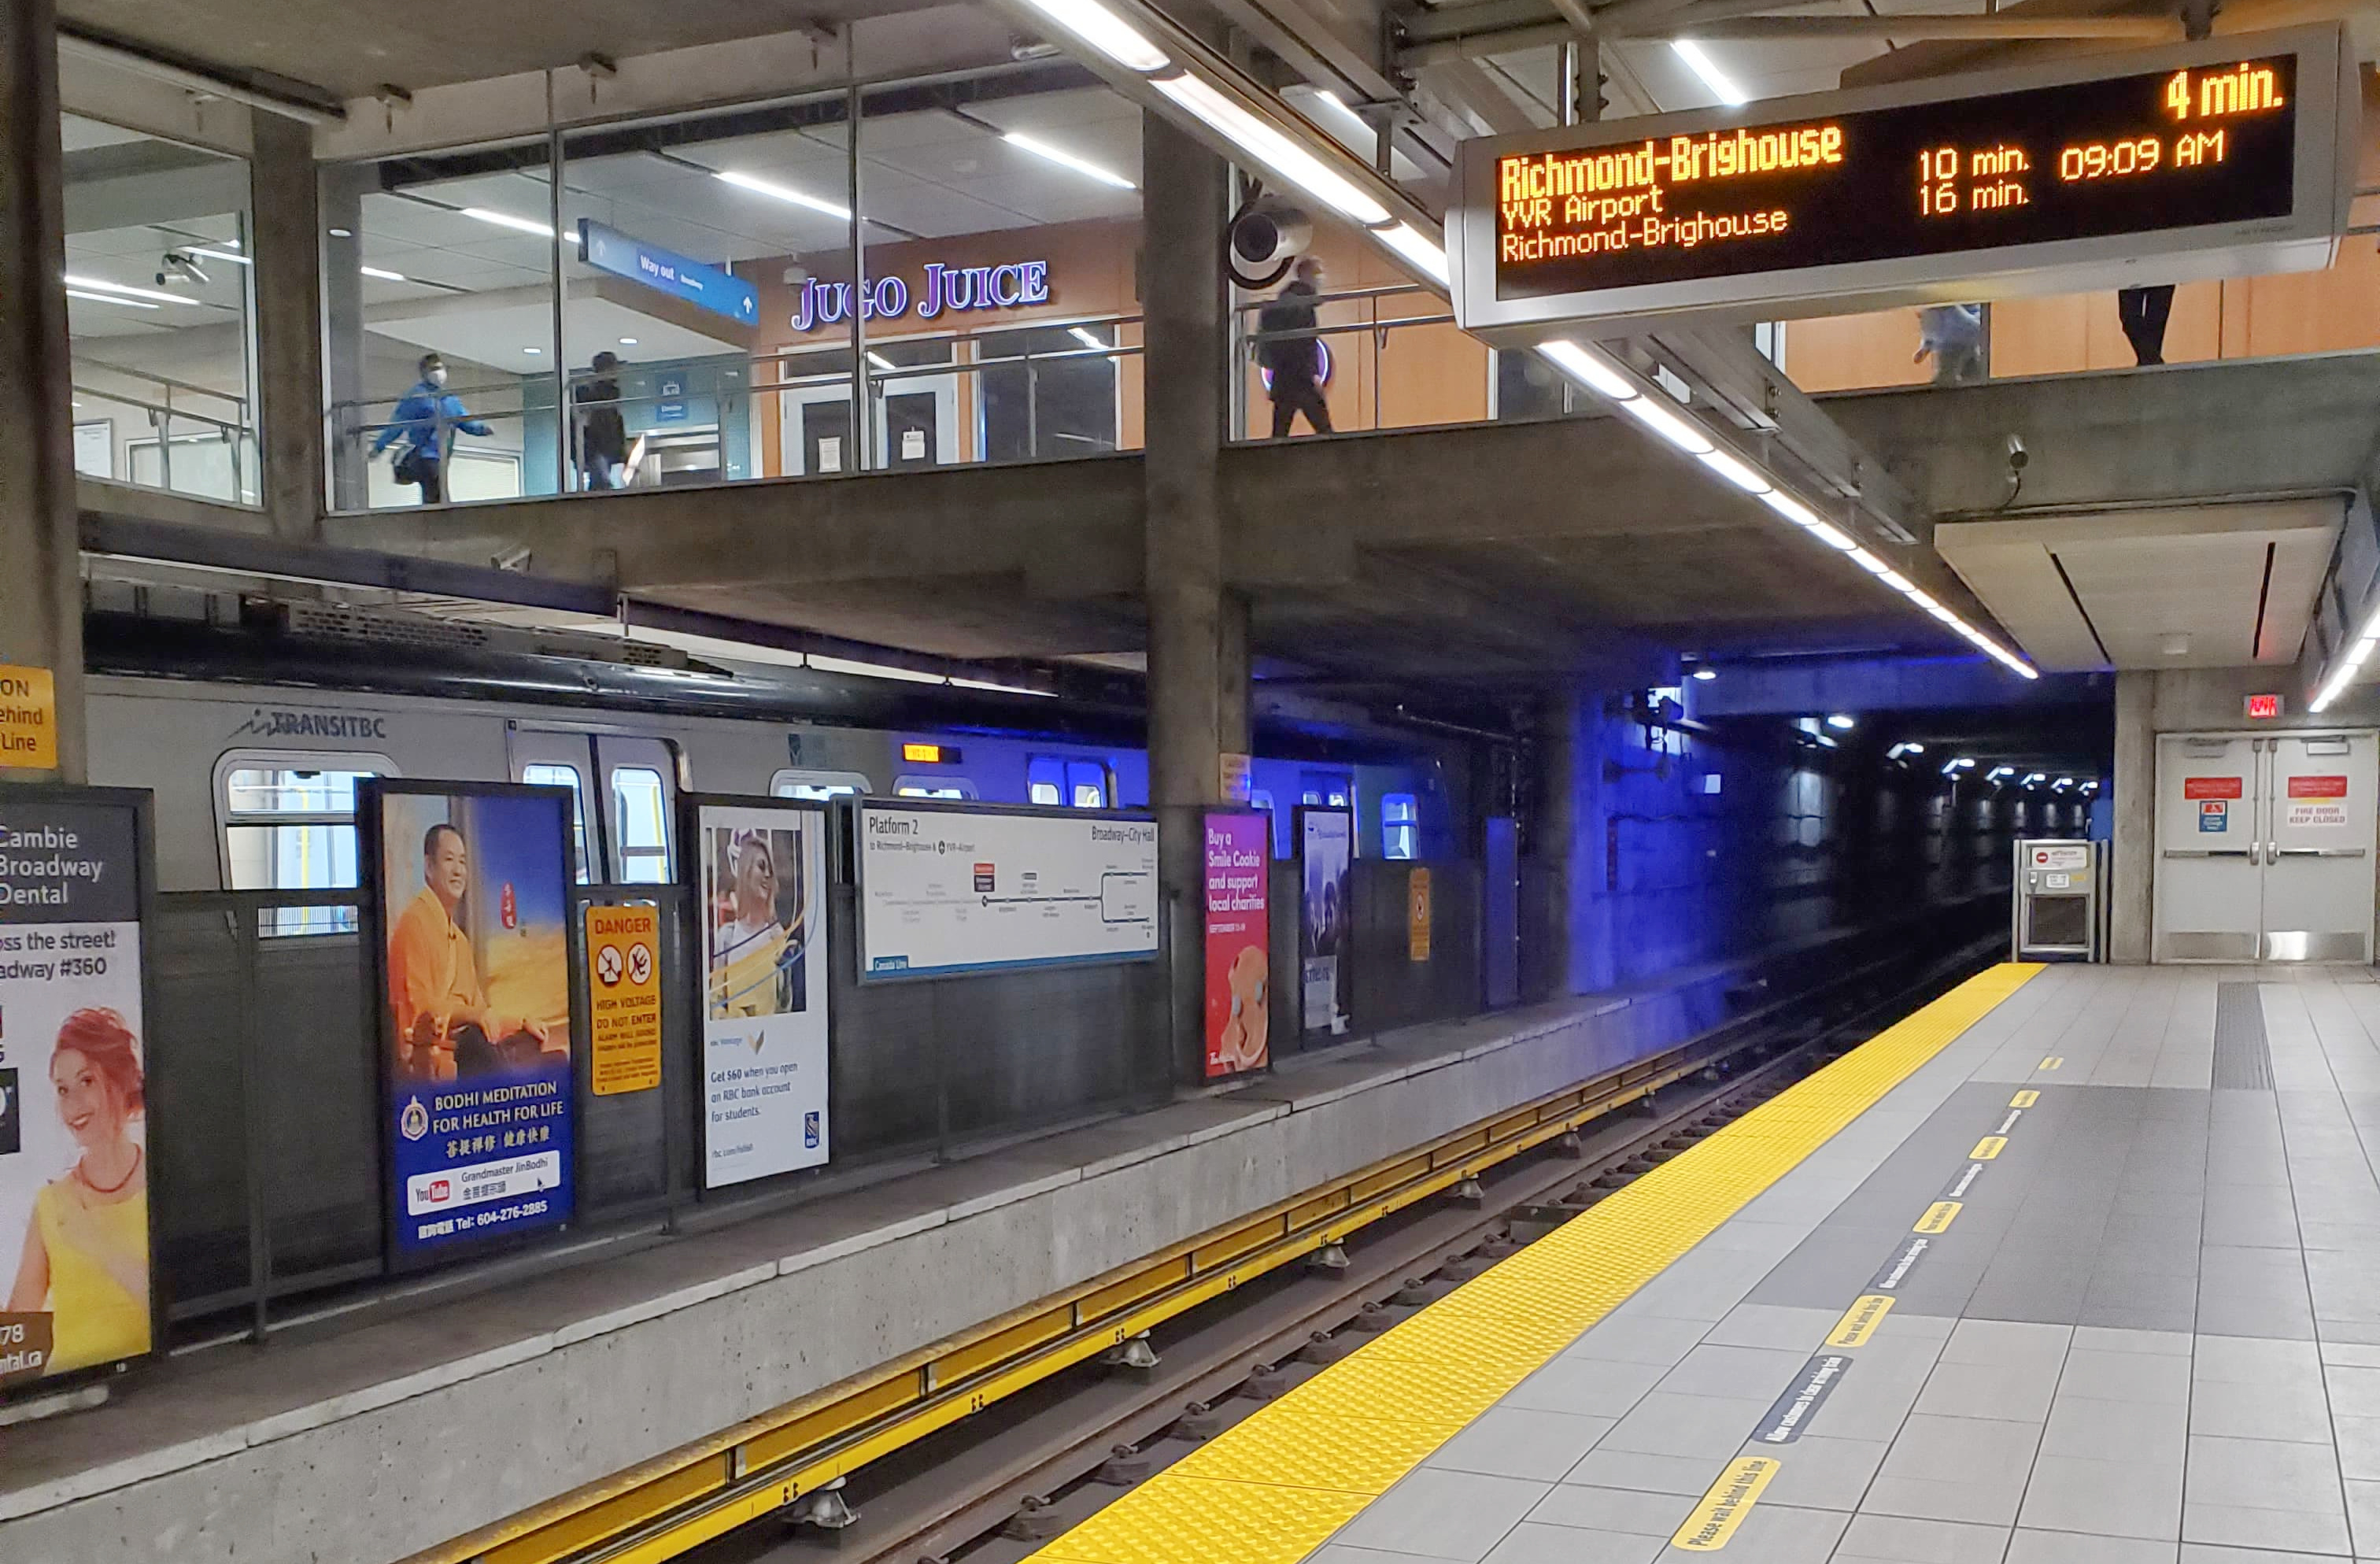 Vancouver's Transit System